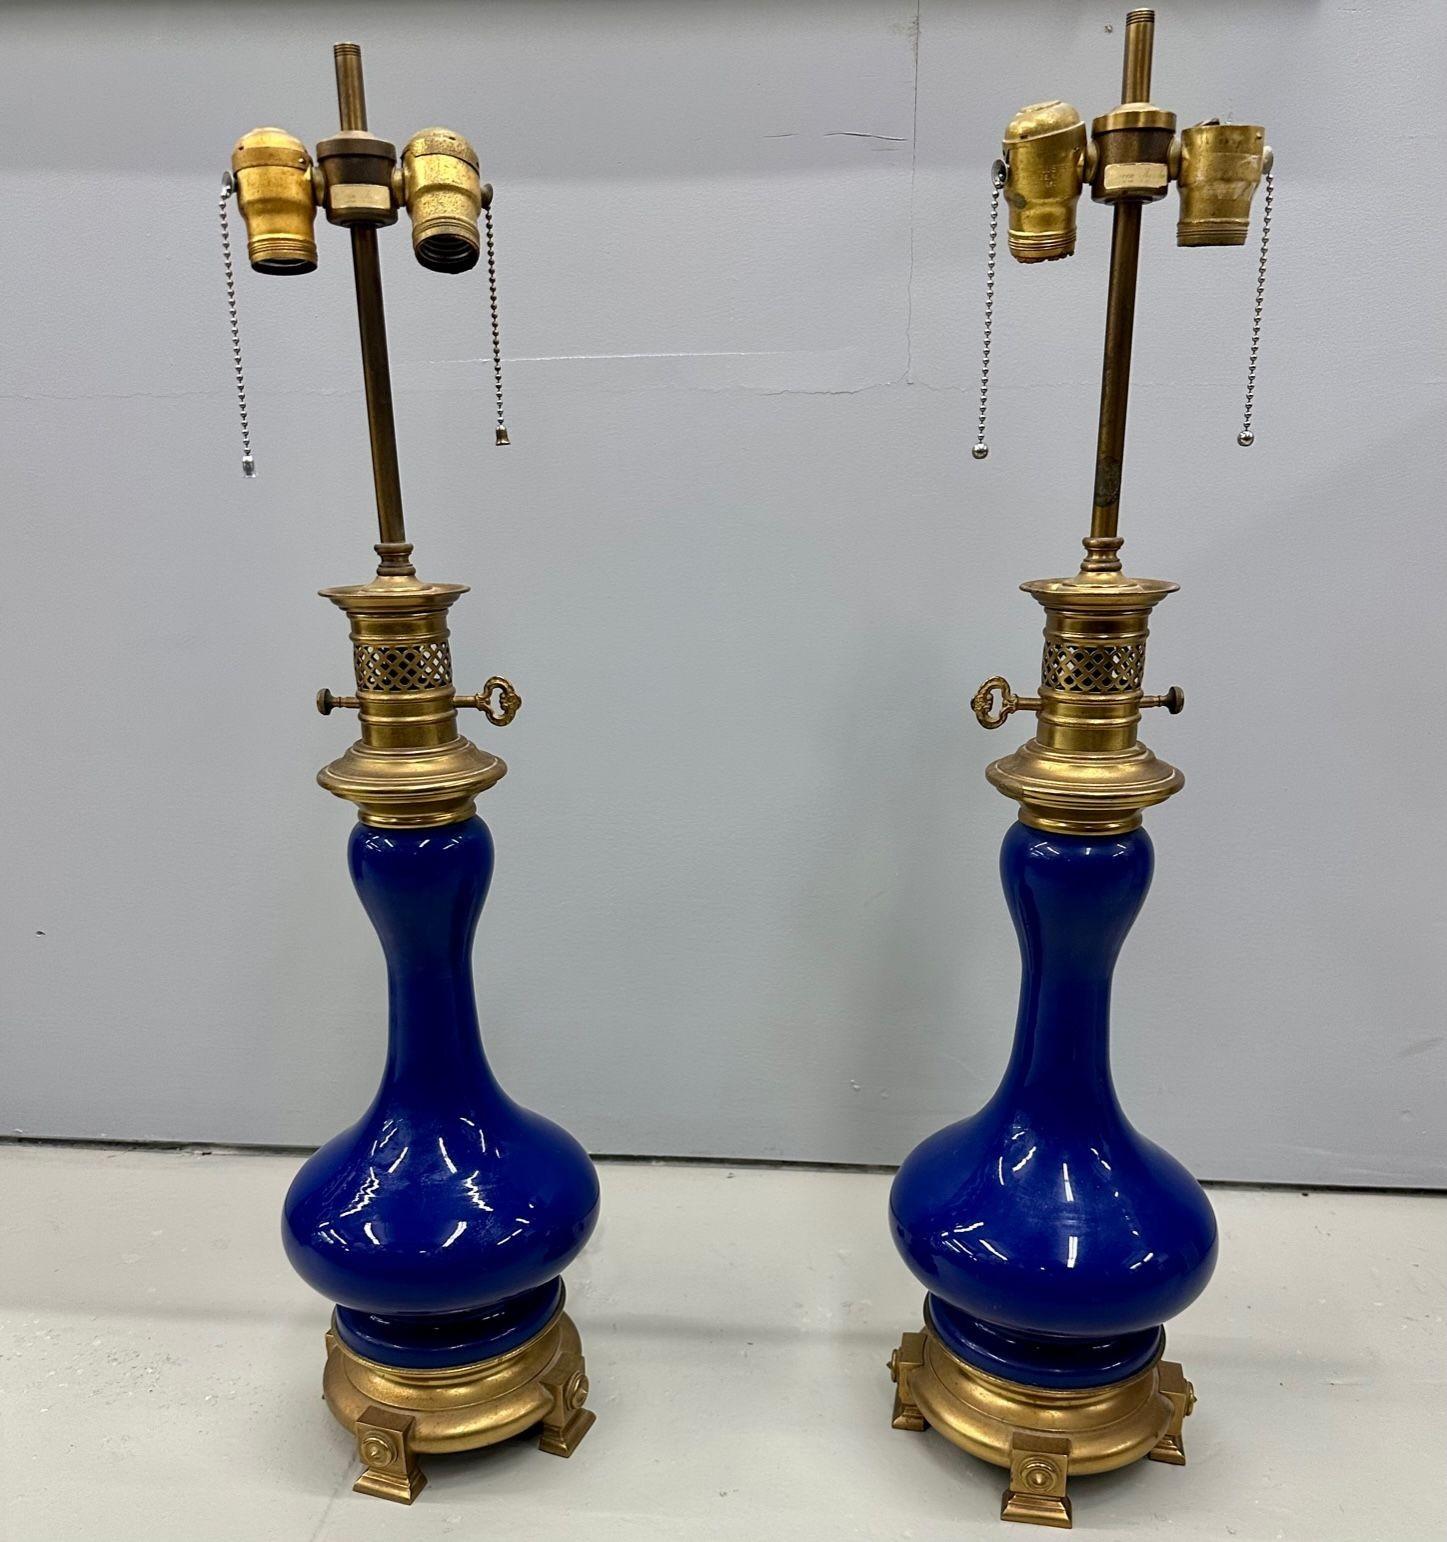 Vintage Paire de lampes de table en porcelaine Warren Kessler bleu cobalt, laiton, Labellisé
Chacune a une belle et riche couleur bleu cobalt et a une forme de lanterne à huile avec une base de table et des montures en bronze. L'ensemble ayant une